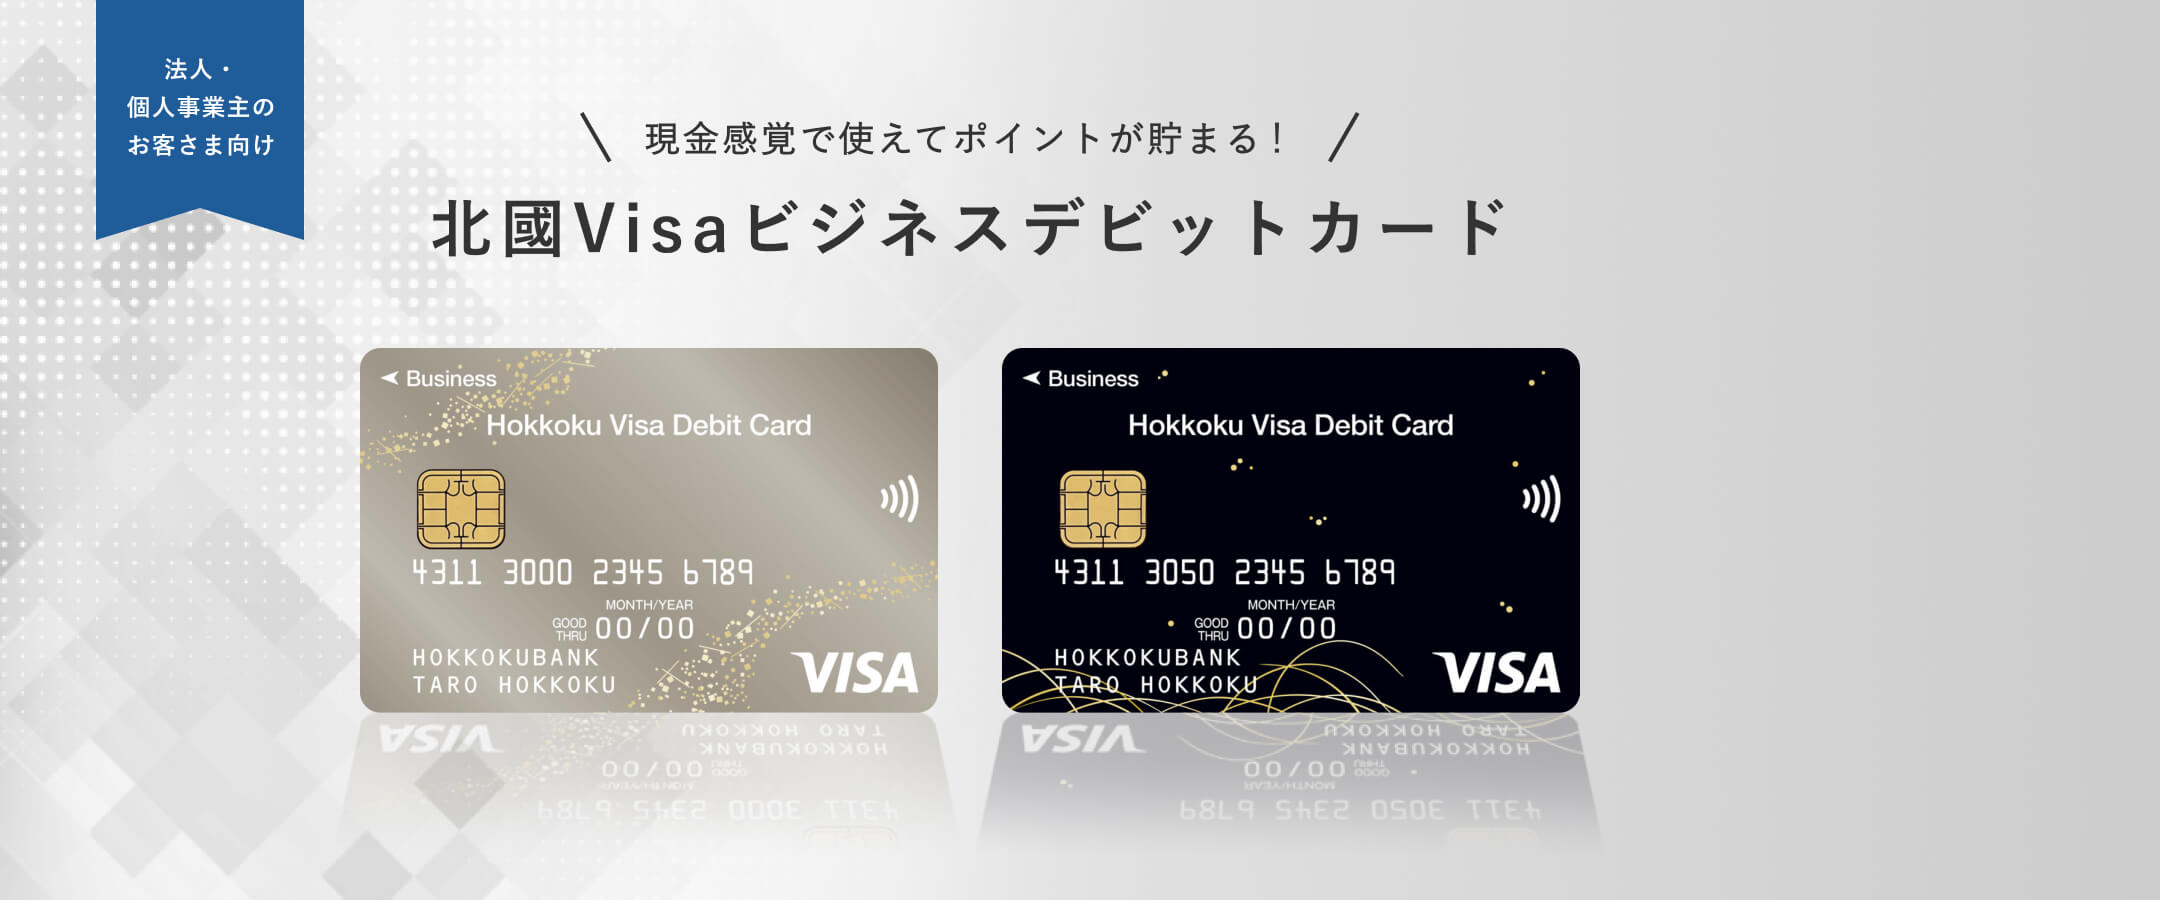 北國Visaビジネスデビットカード